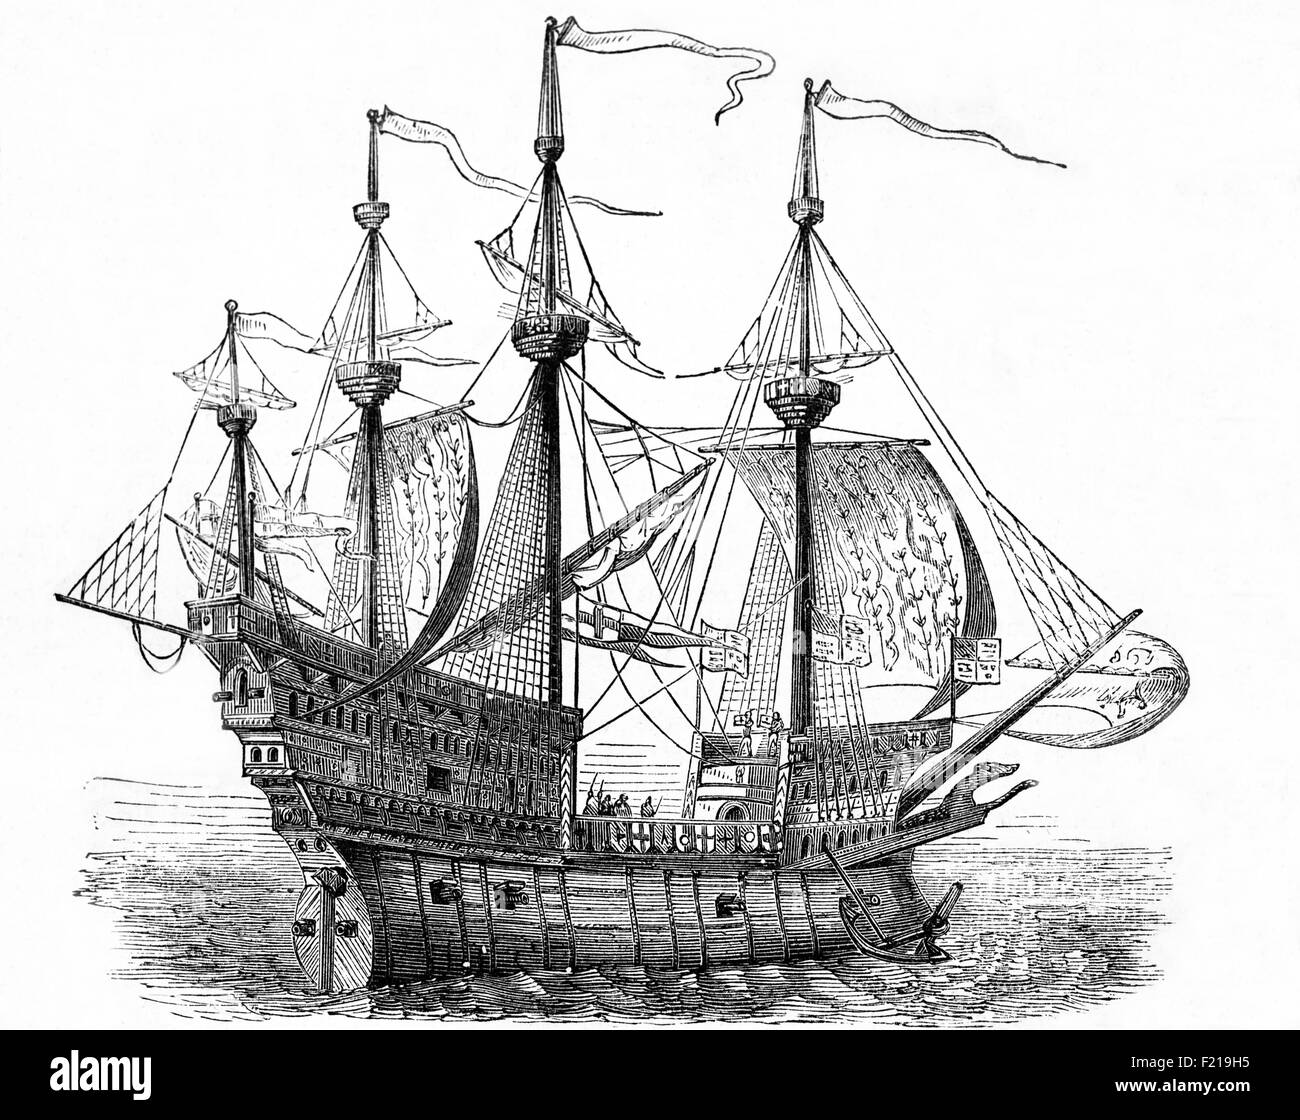 La Mary Rose est un navire de guerre de type châssis de la marine anglaise Tudor du roi Henri VIII Elle a servi pendant 33 ans dans plusieurs guerres contre la France, l'Écosse et la Bretagne. Après avoir été considérablement reconstruite en 1536, elle a vu sa dernière action le 19 juillet 1545. Elle a mené l'attaque sur les gallées d'une flotte d'invasion française, mais a coulé dans le Solent, le détroit au nord de l'île de Wight. D'un dessin original de l'artiste du XVIe siècle, Hans Holbein. Banque D'Images